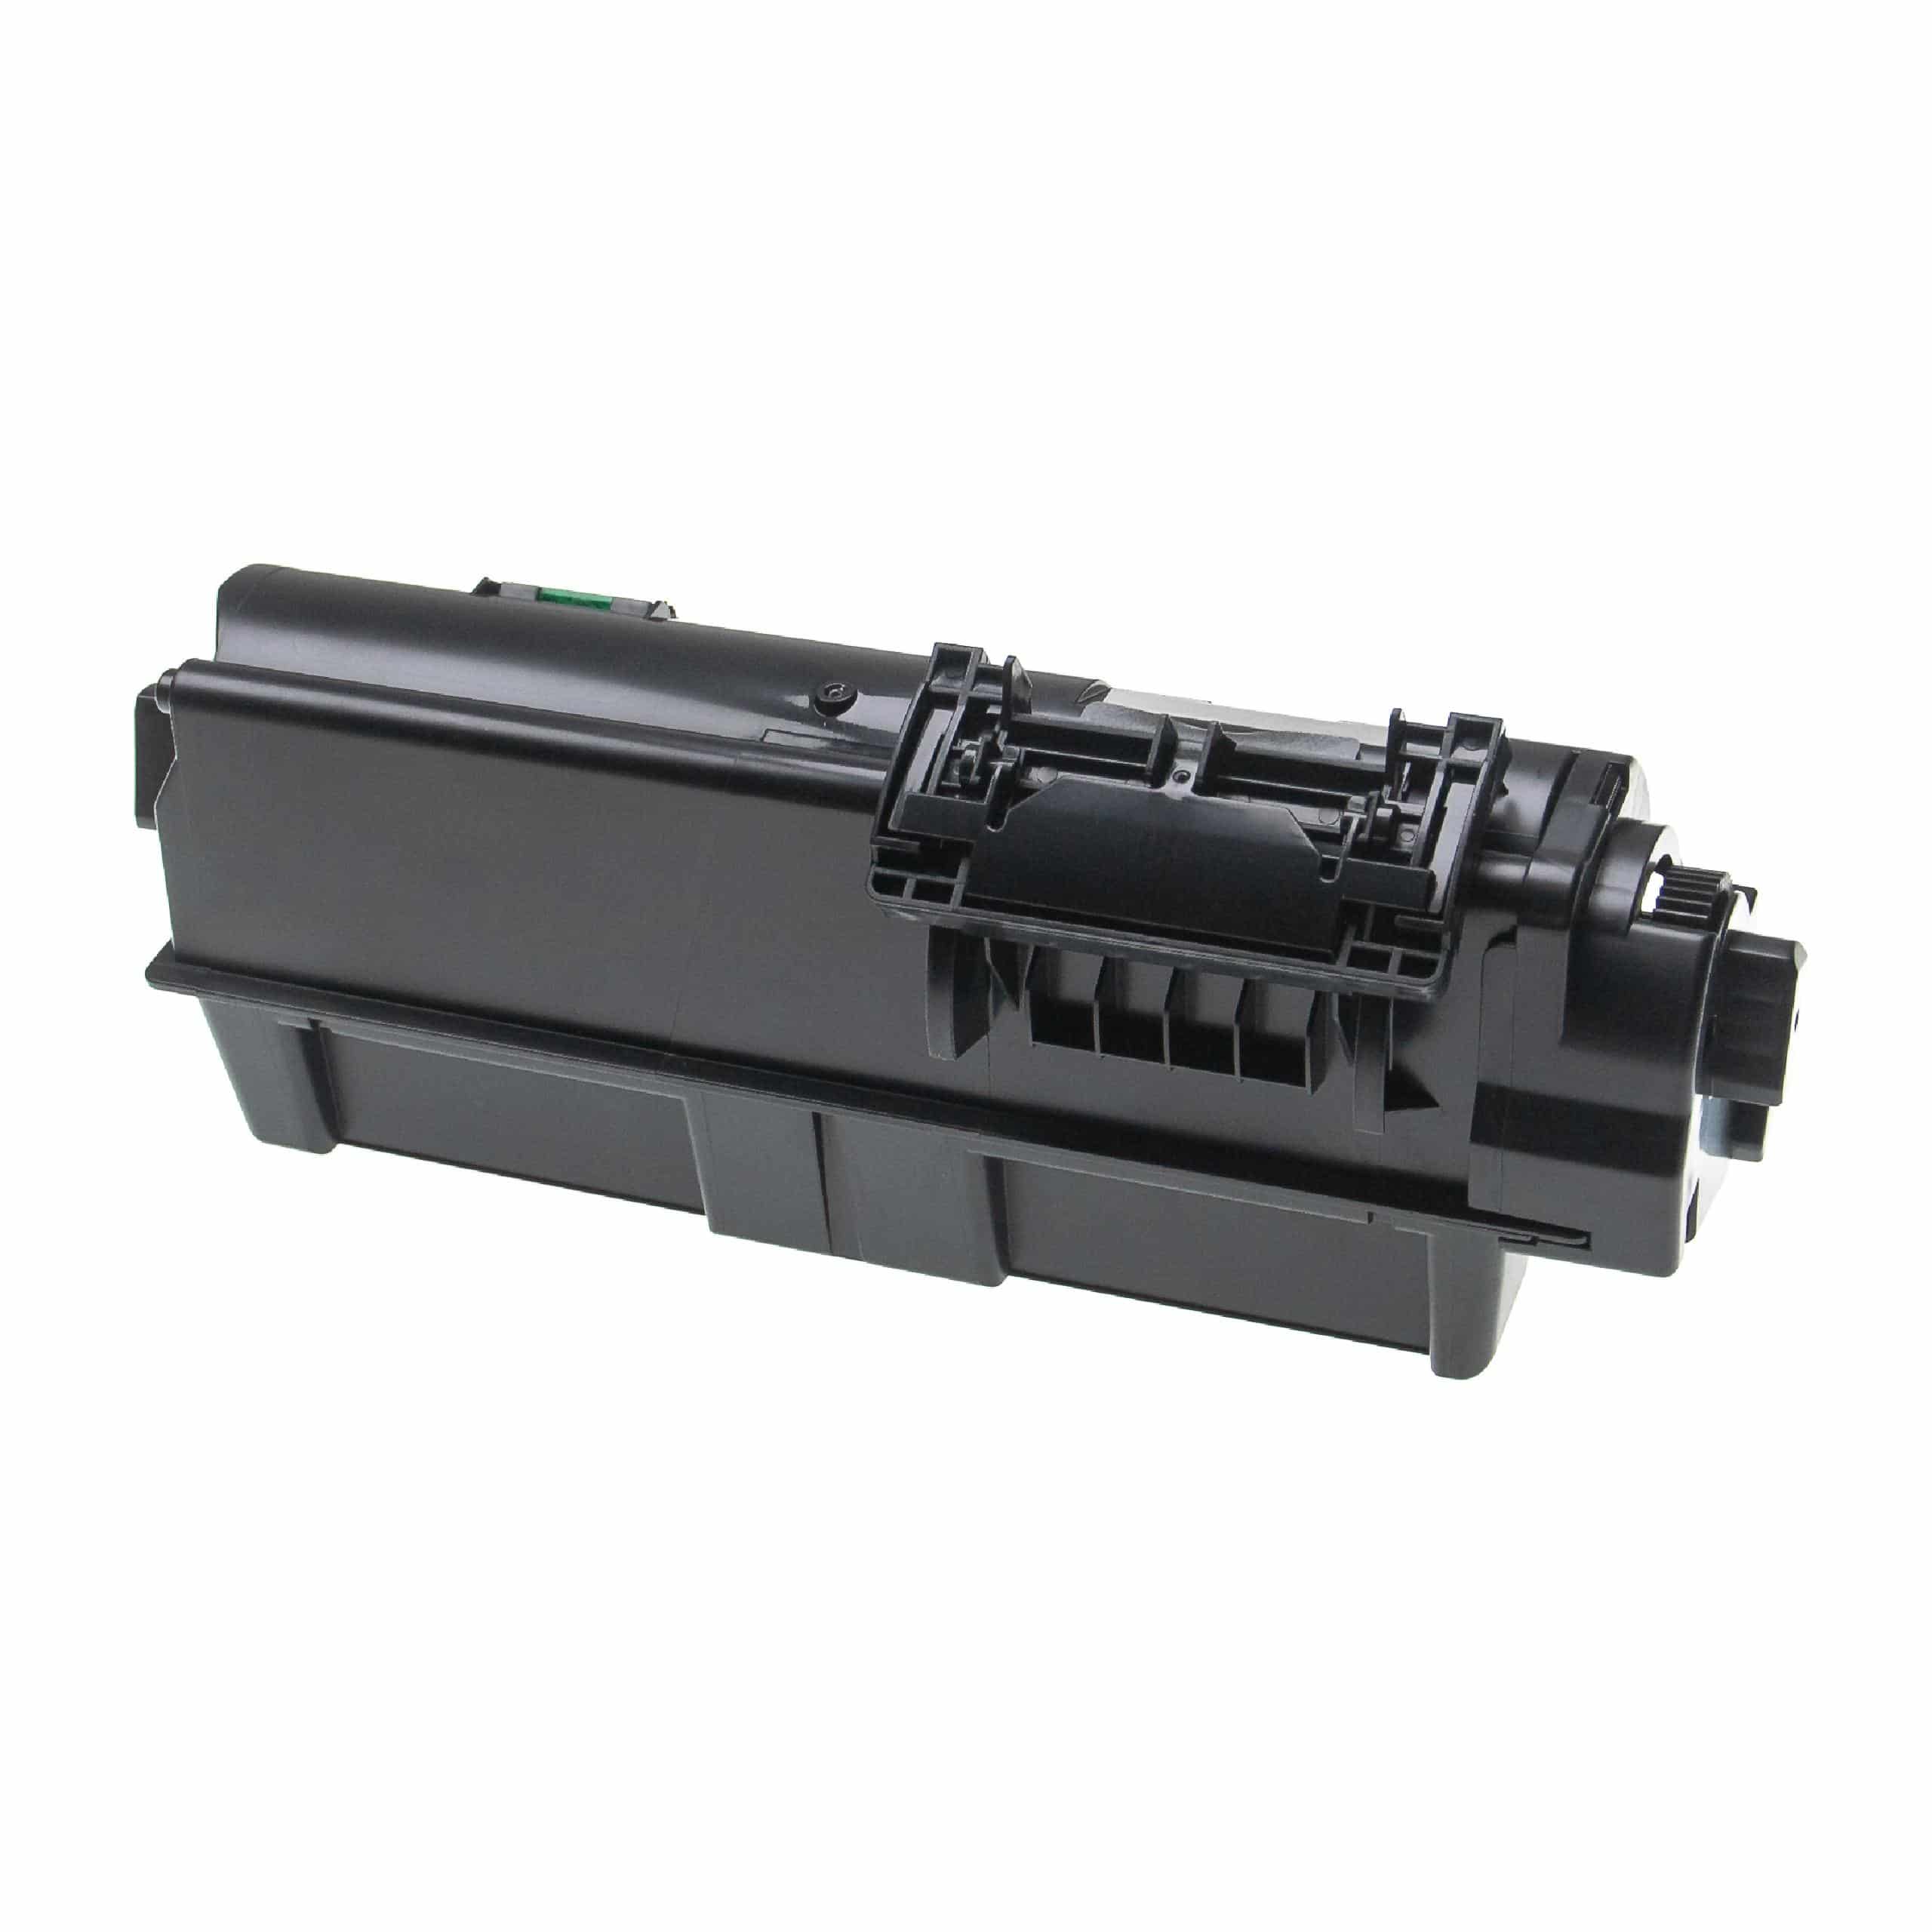 5x Cartouches de toner remplace Kyocera TK-1160 pour imprimante laser Kyocera, noir